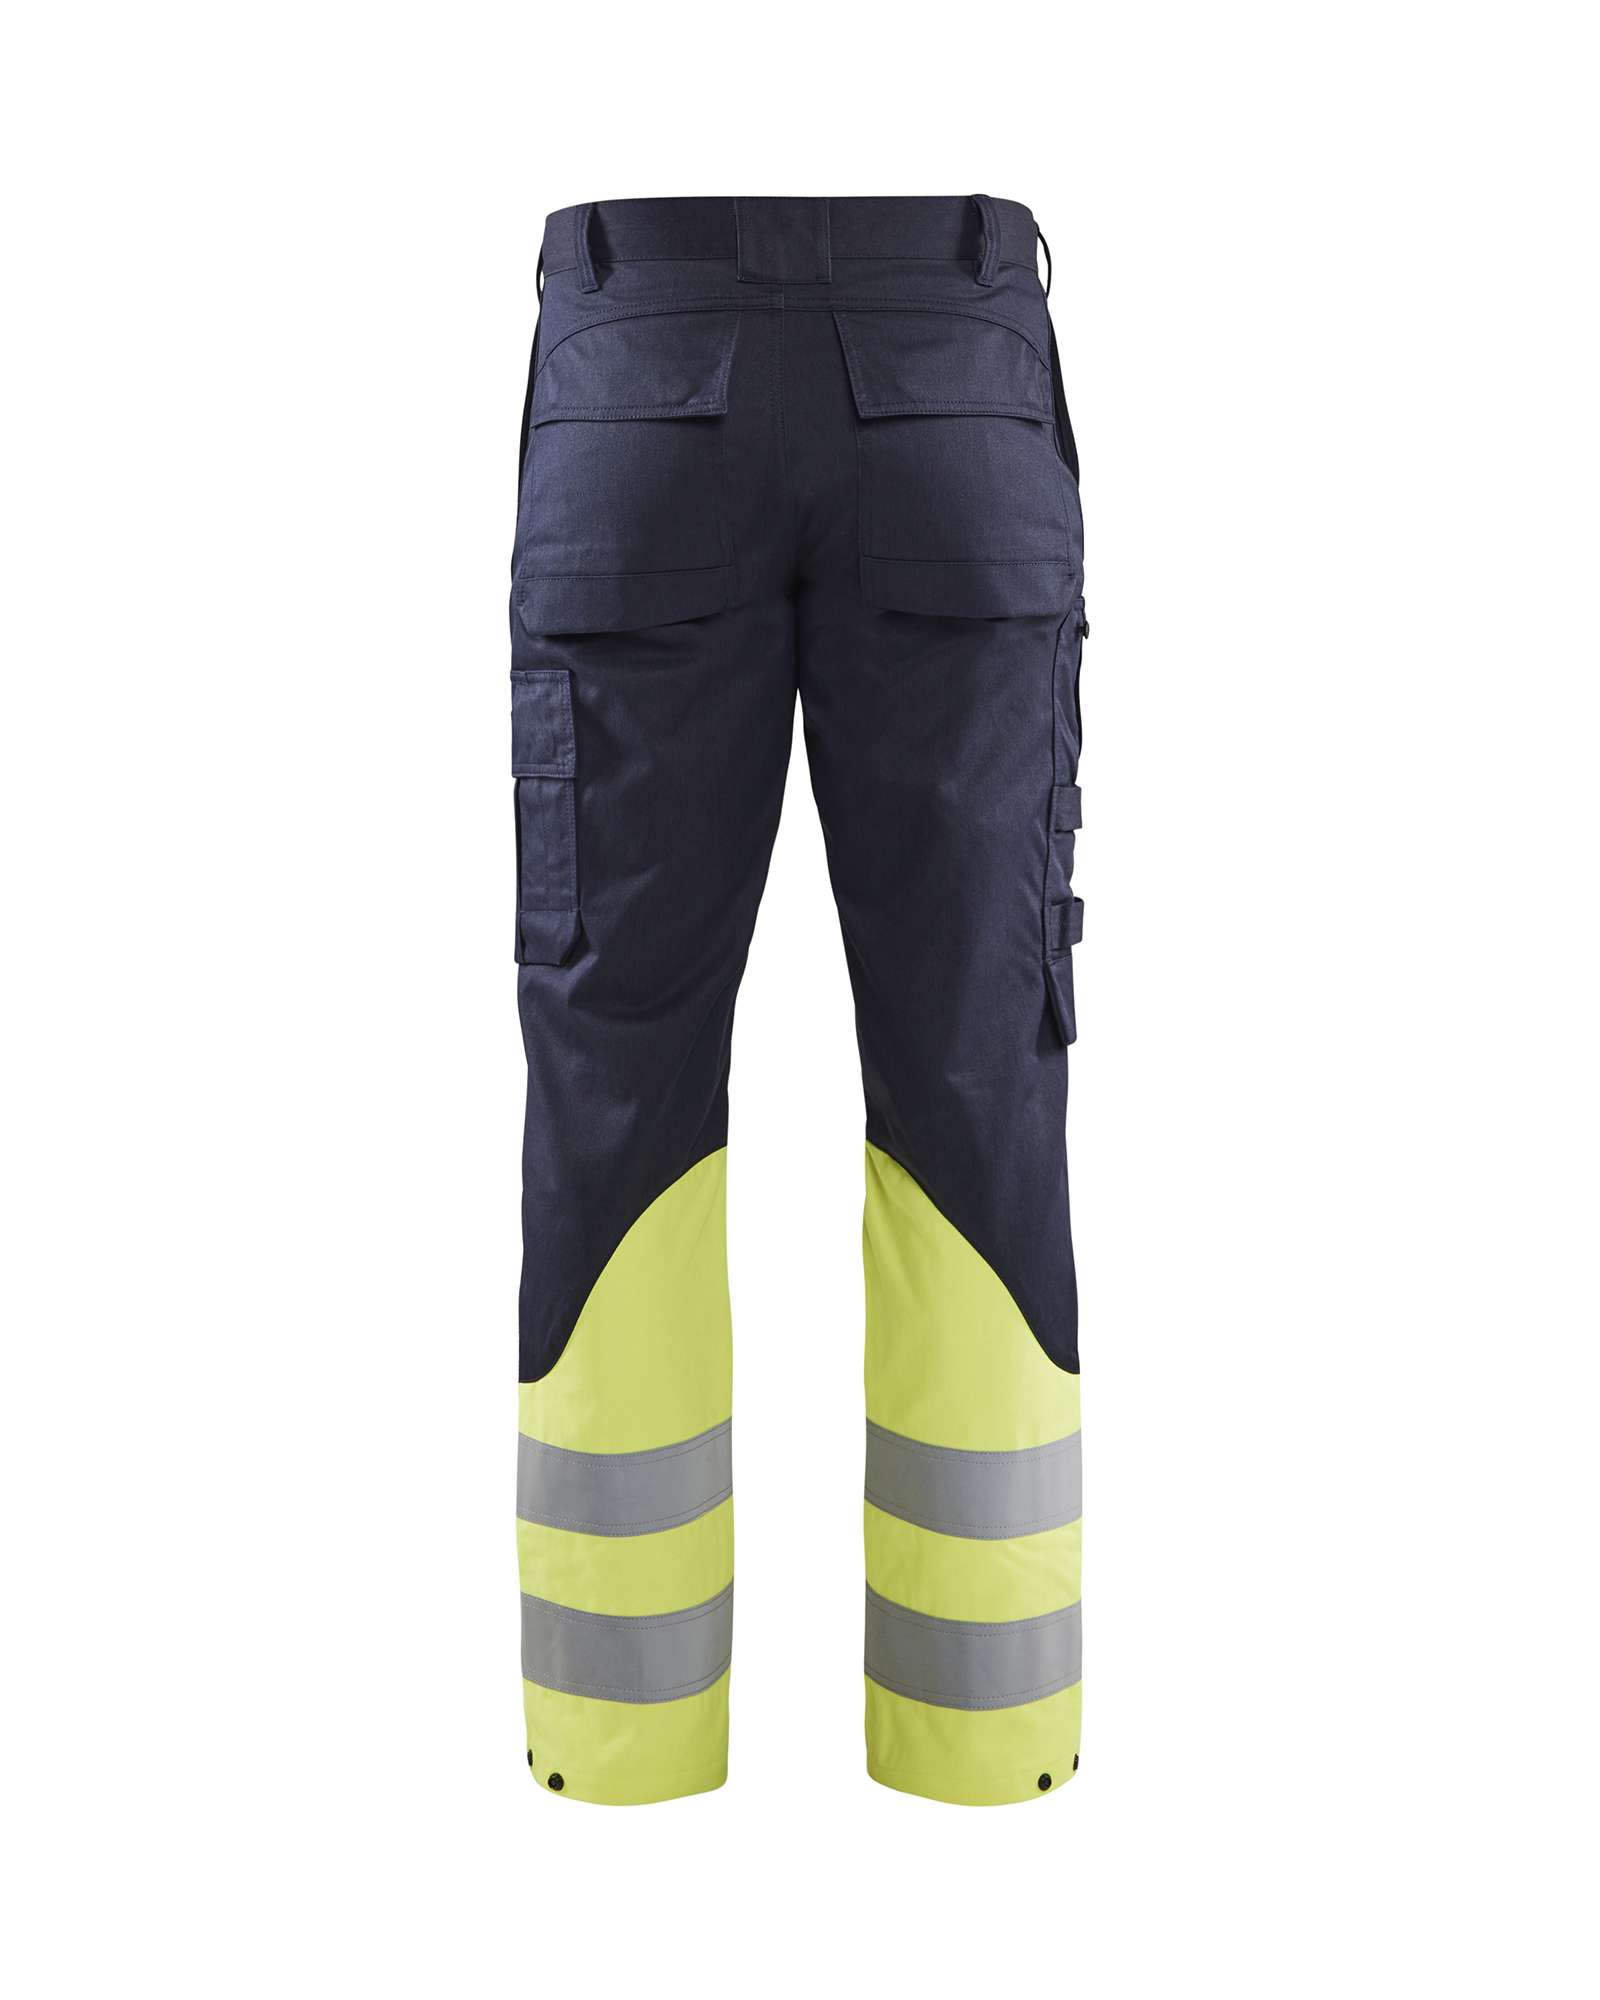 Pantalon inherent steel Blåkläder 1705 Marine/Jaune fluo Blaklader - 170515198933C